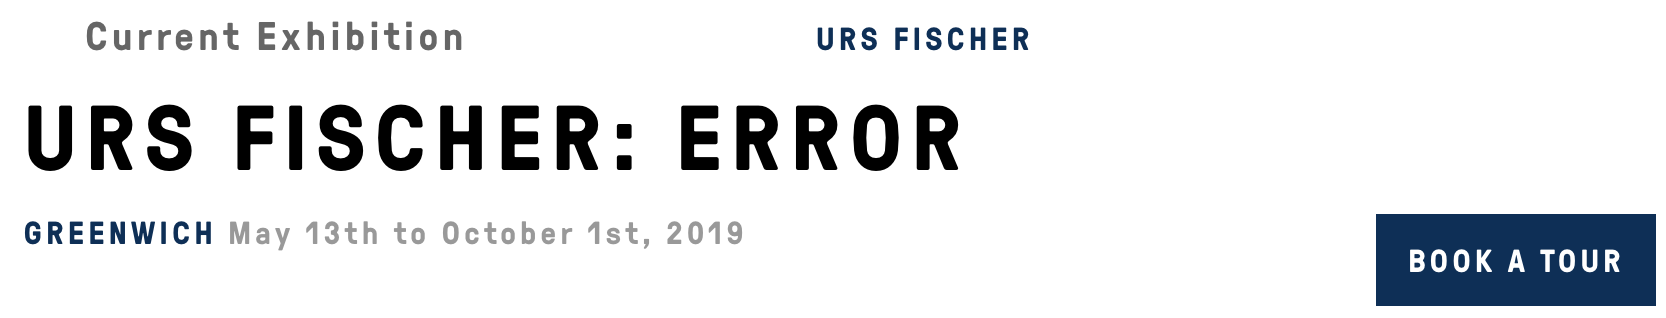 Summer 2019 at The Brant Foundation/Urs Fischer: Error